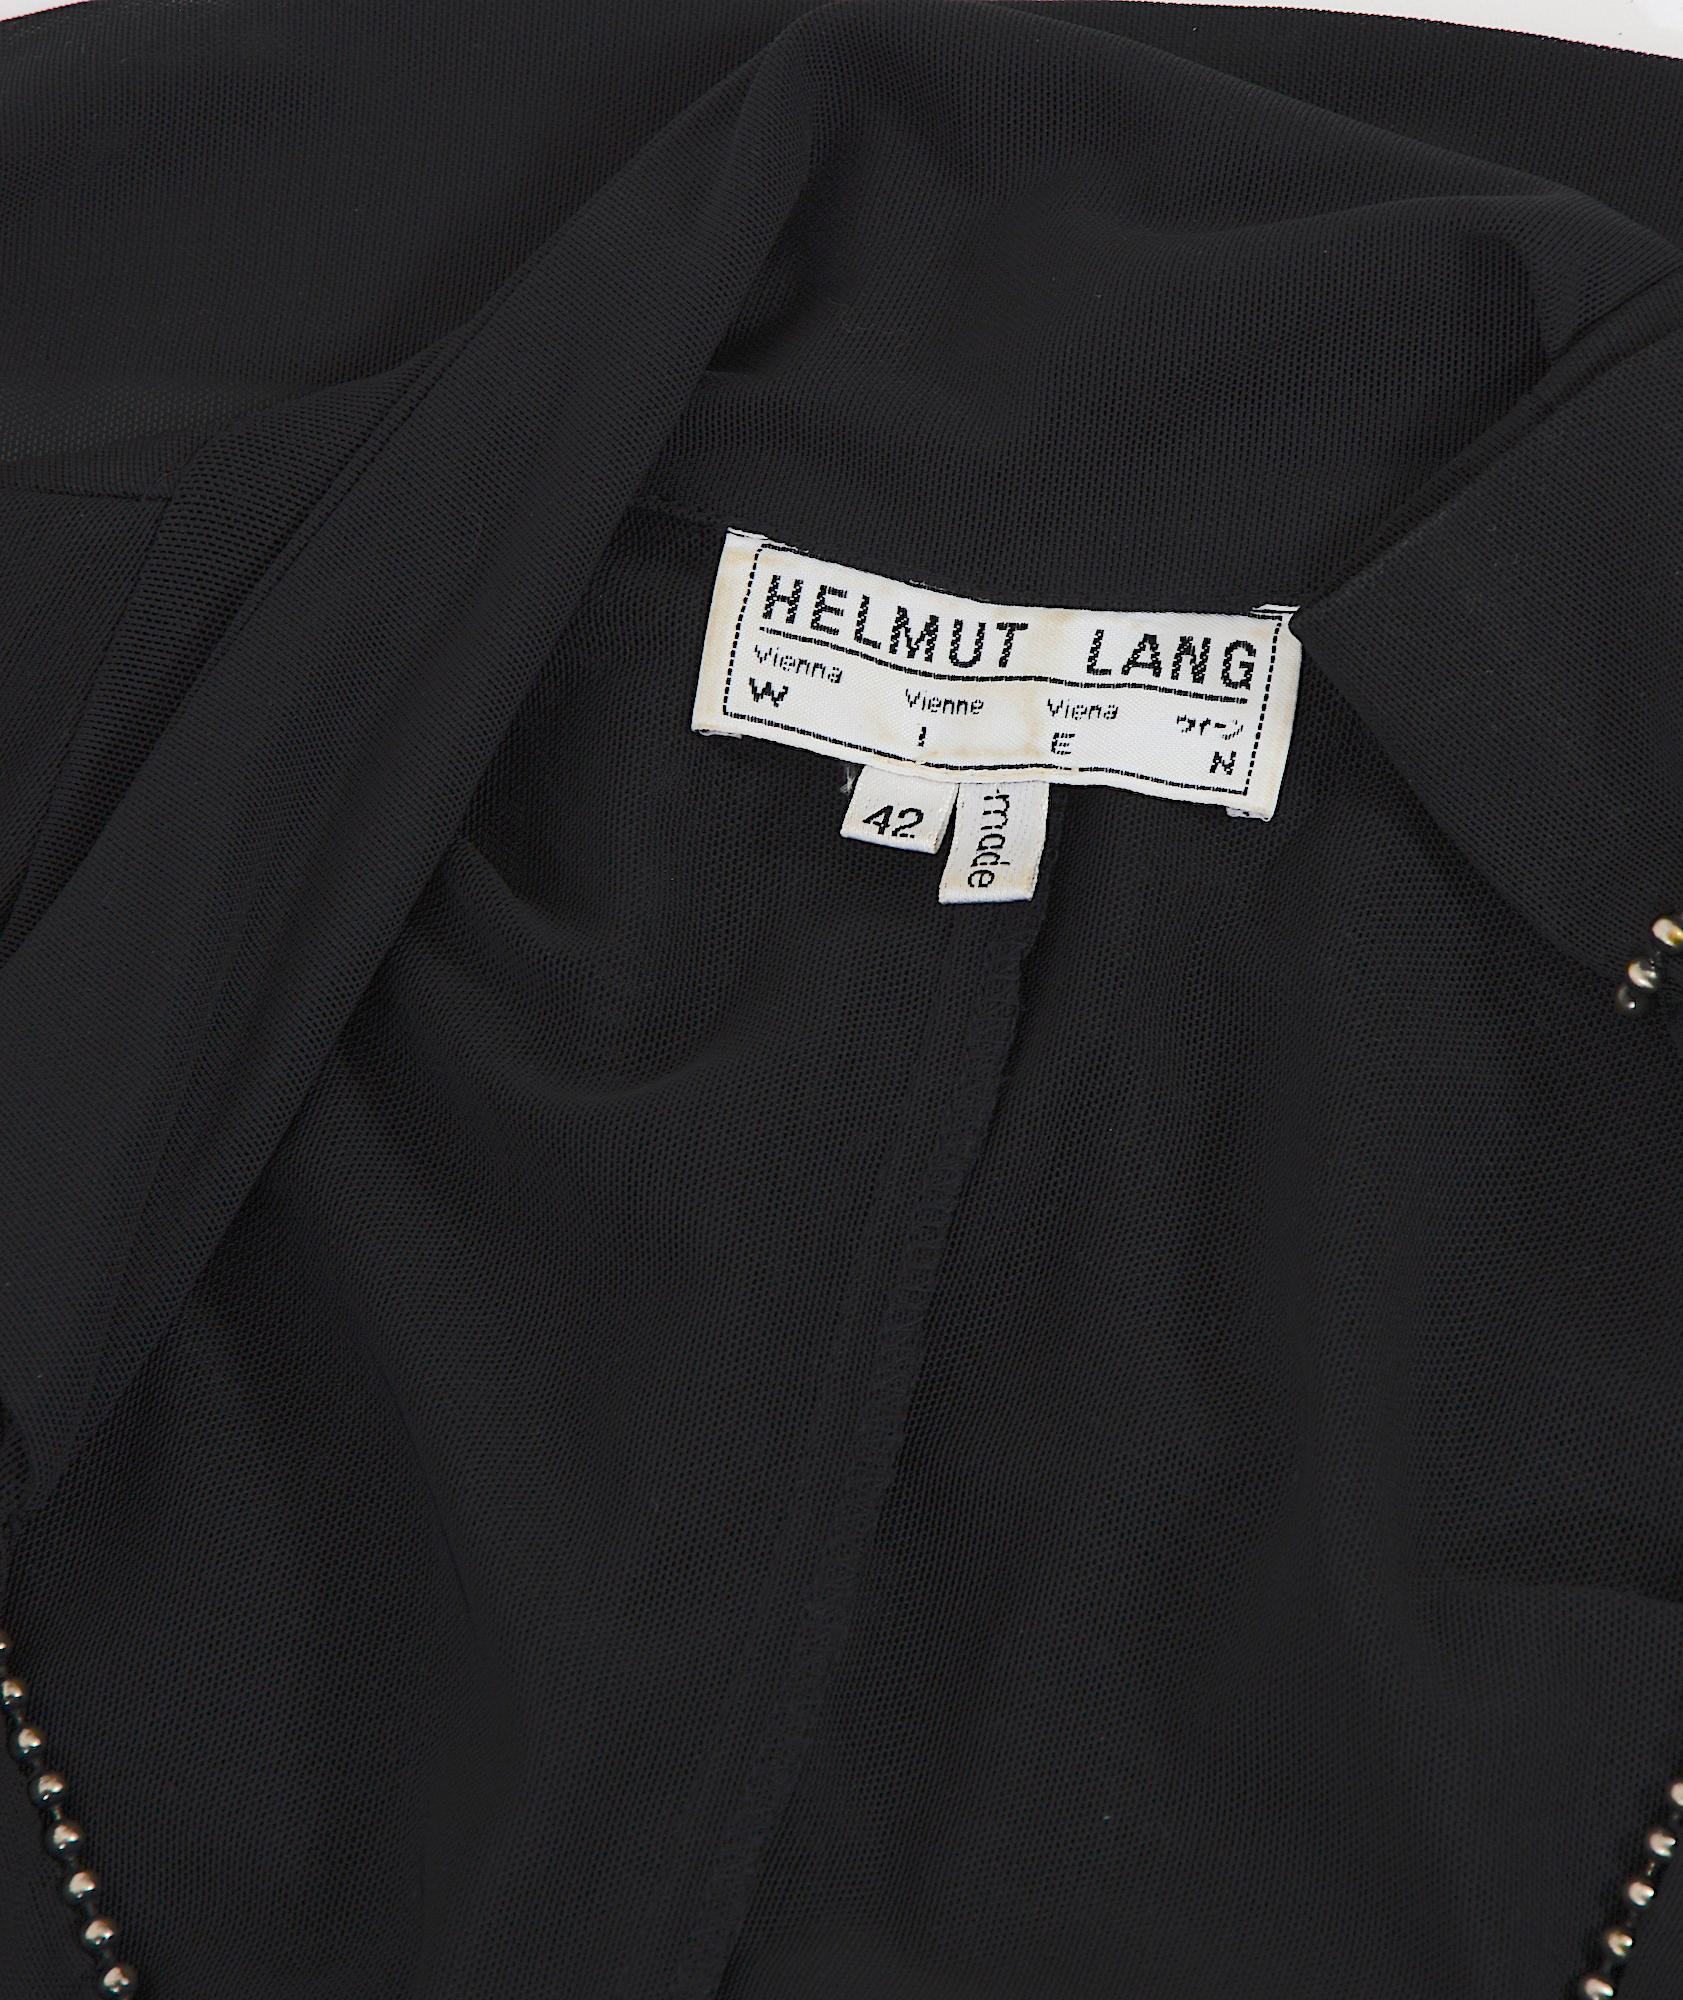 Helmut Lang F/W 1989 runway rare embellished oversized transparent black jacket  For Sale 11